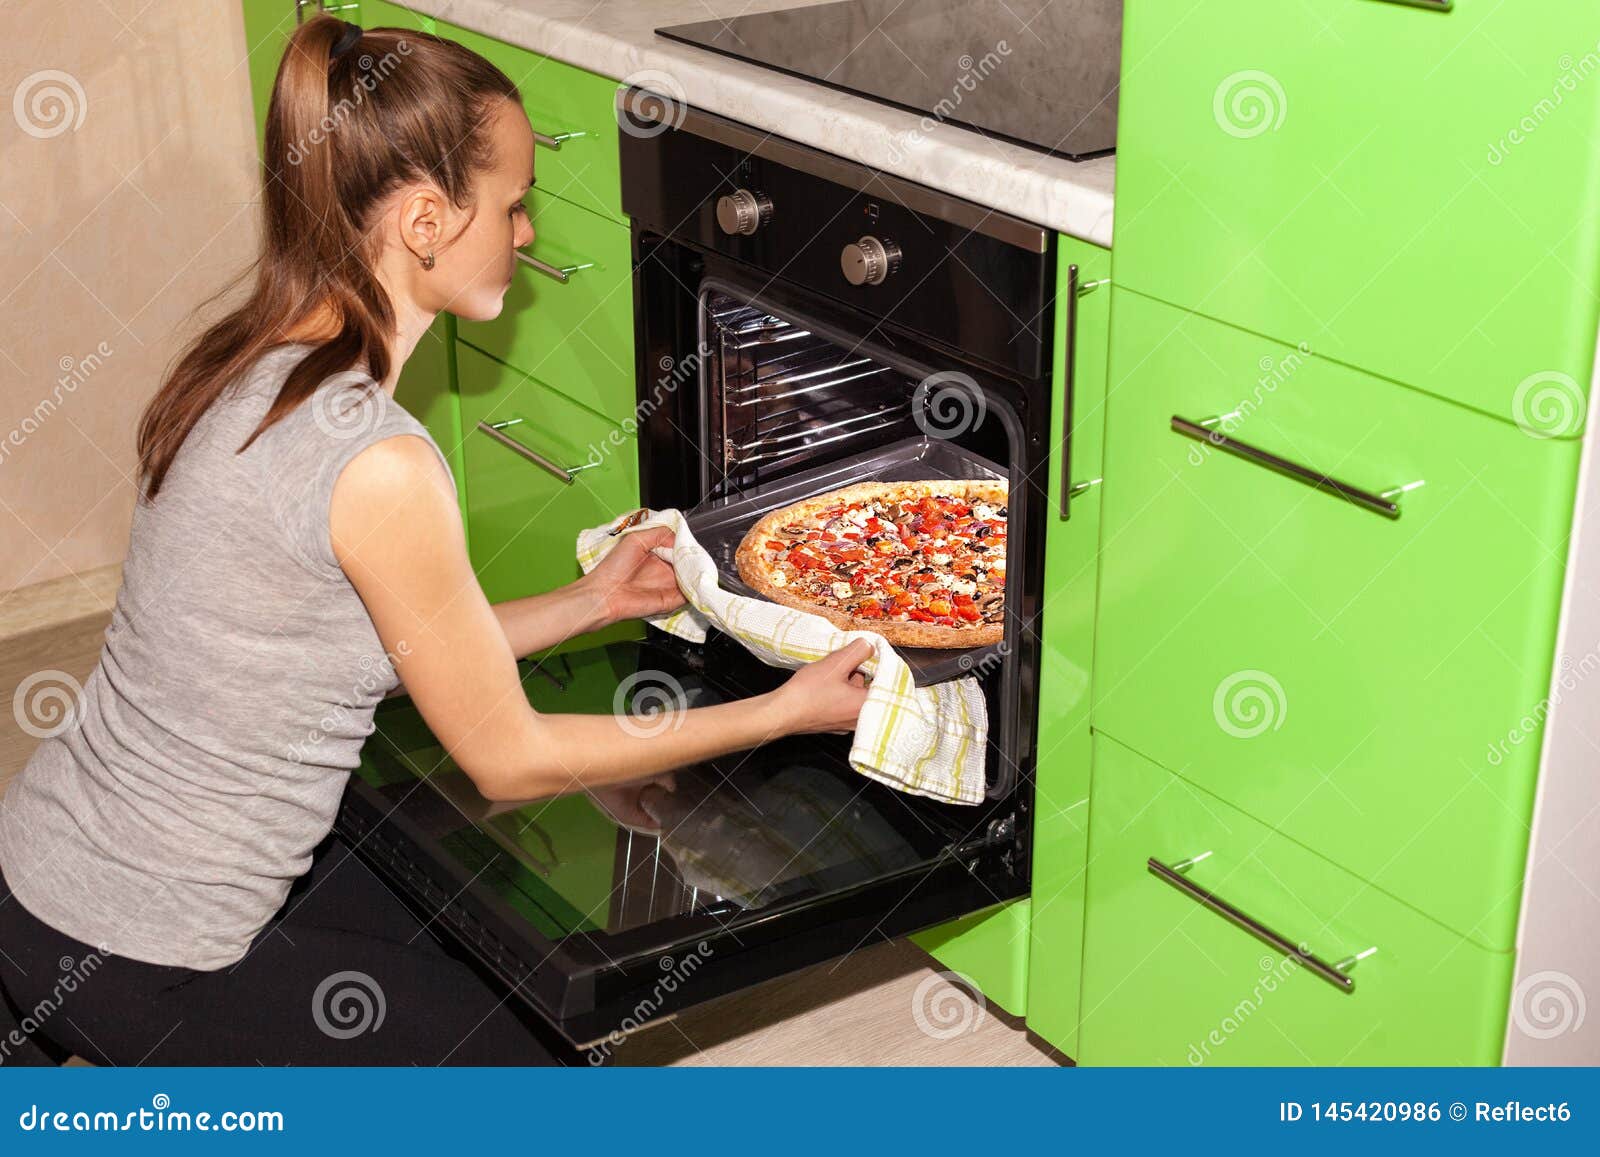 функция пицца в духовке что это фото 71